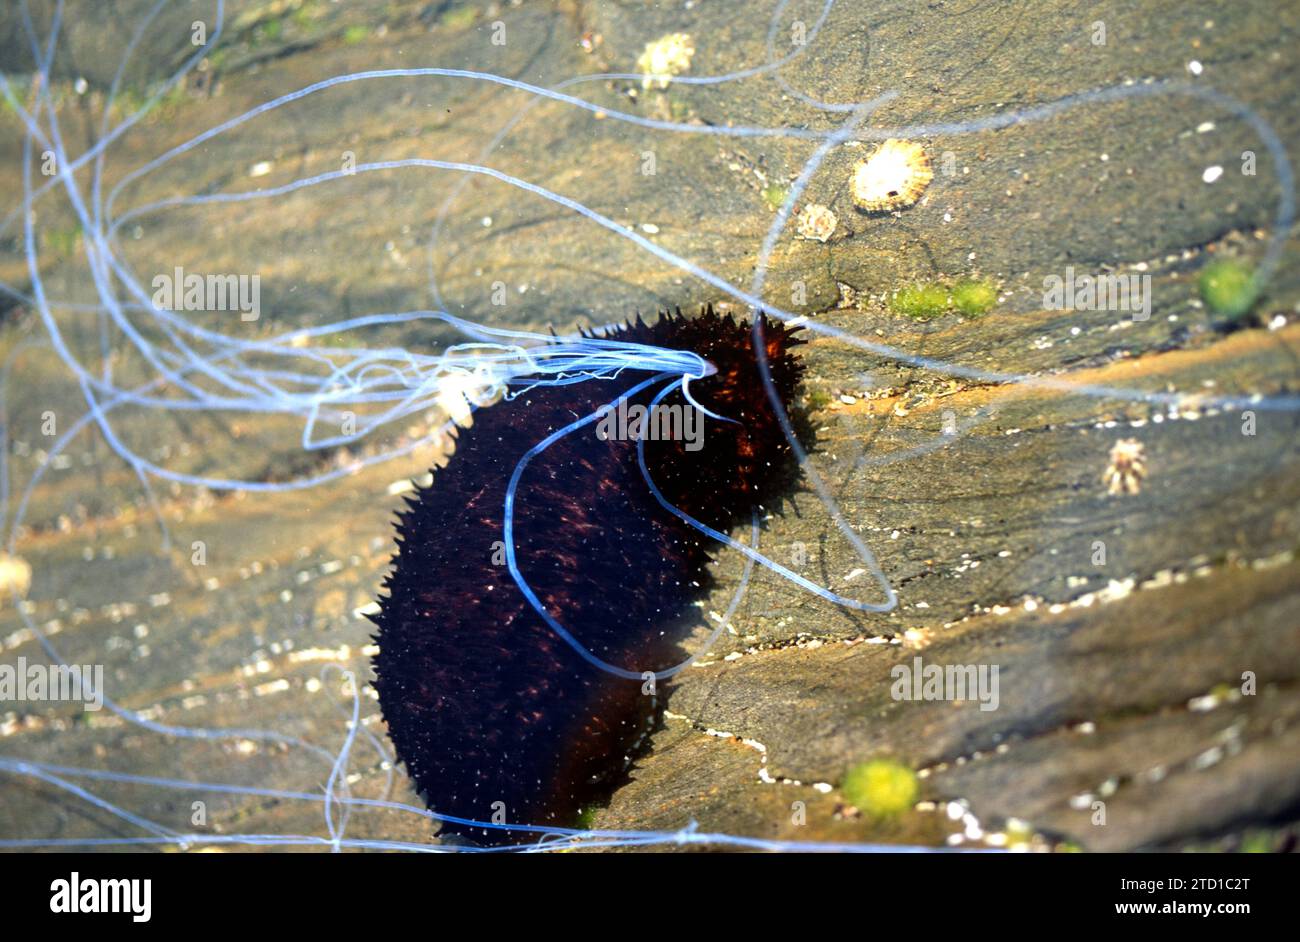 Cetriolo marino nero (Holothuria forskali). Questo campione espelle filamenti adesivi dall'ano per autodifesa. Questa foto è stata scattata a Cap Creus, giro Foto Stock